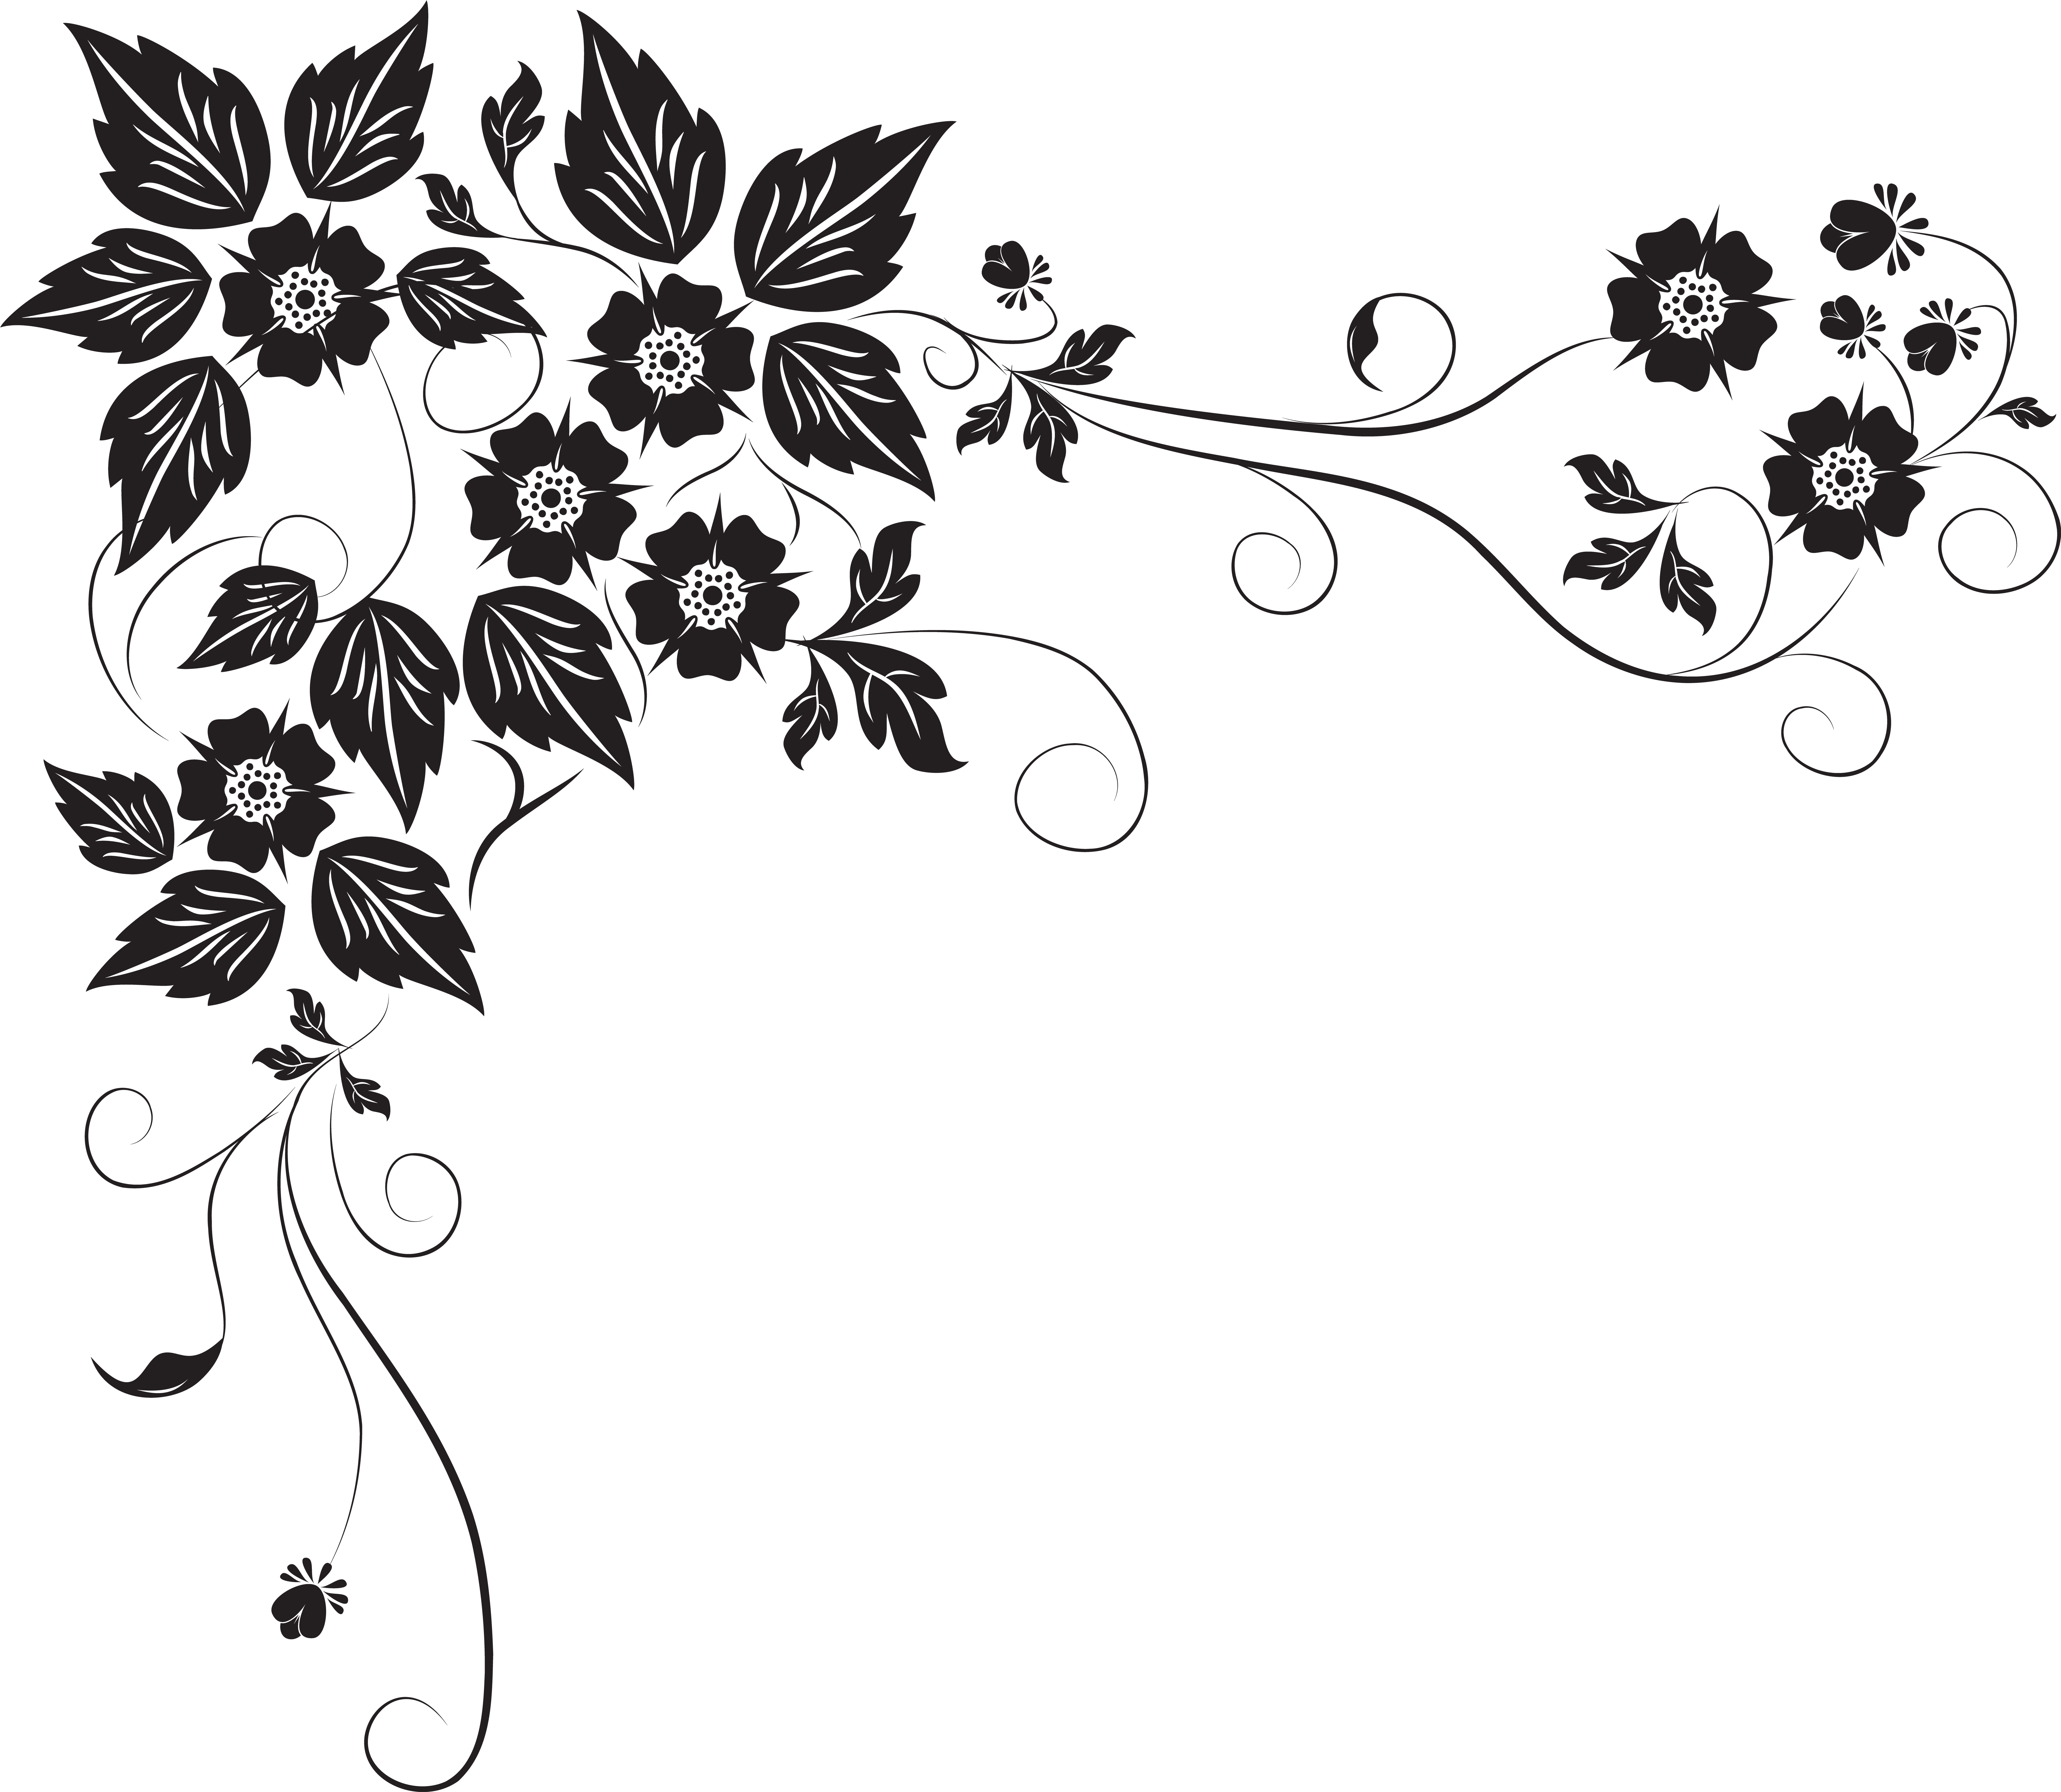 A Black Floral Design On A Black Background